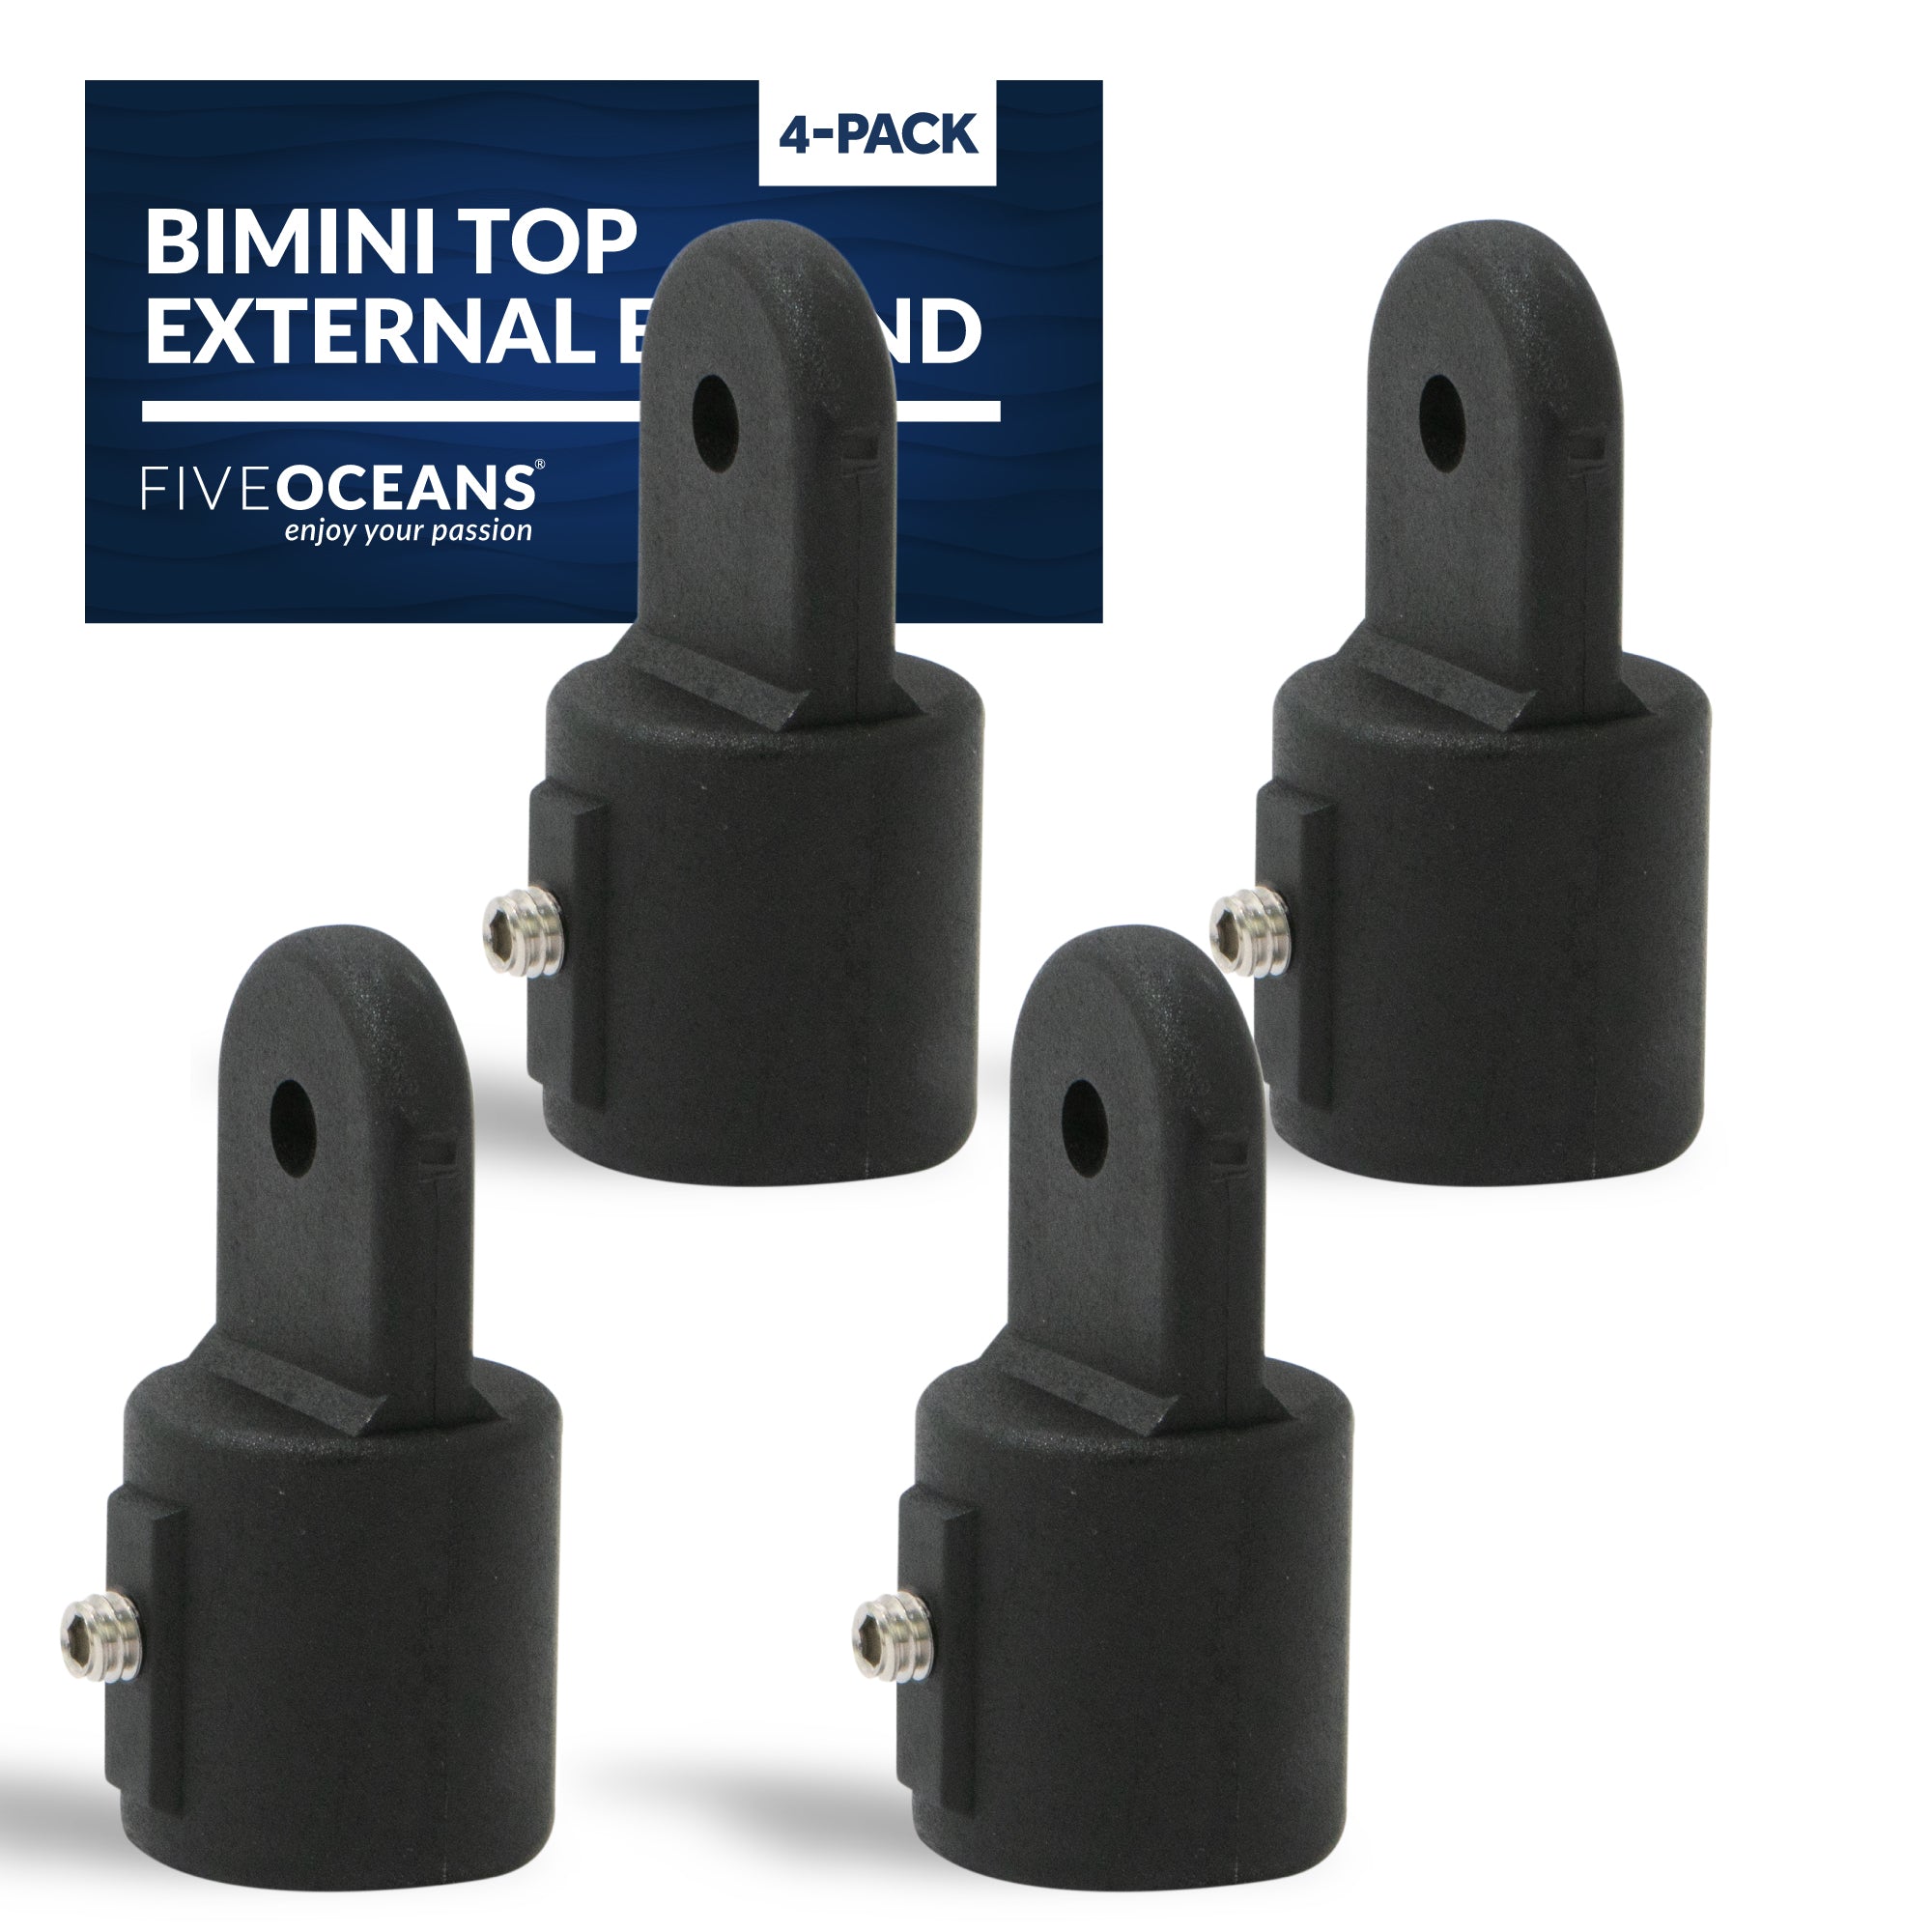 Bimini Top External Eye End, 7/8" Black Nylon, 4-Pack - FO3845-M4